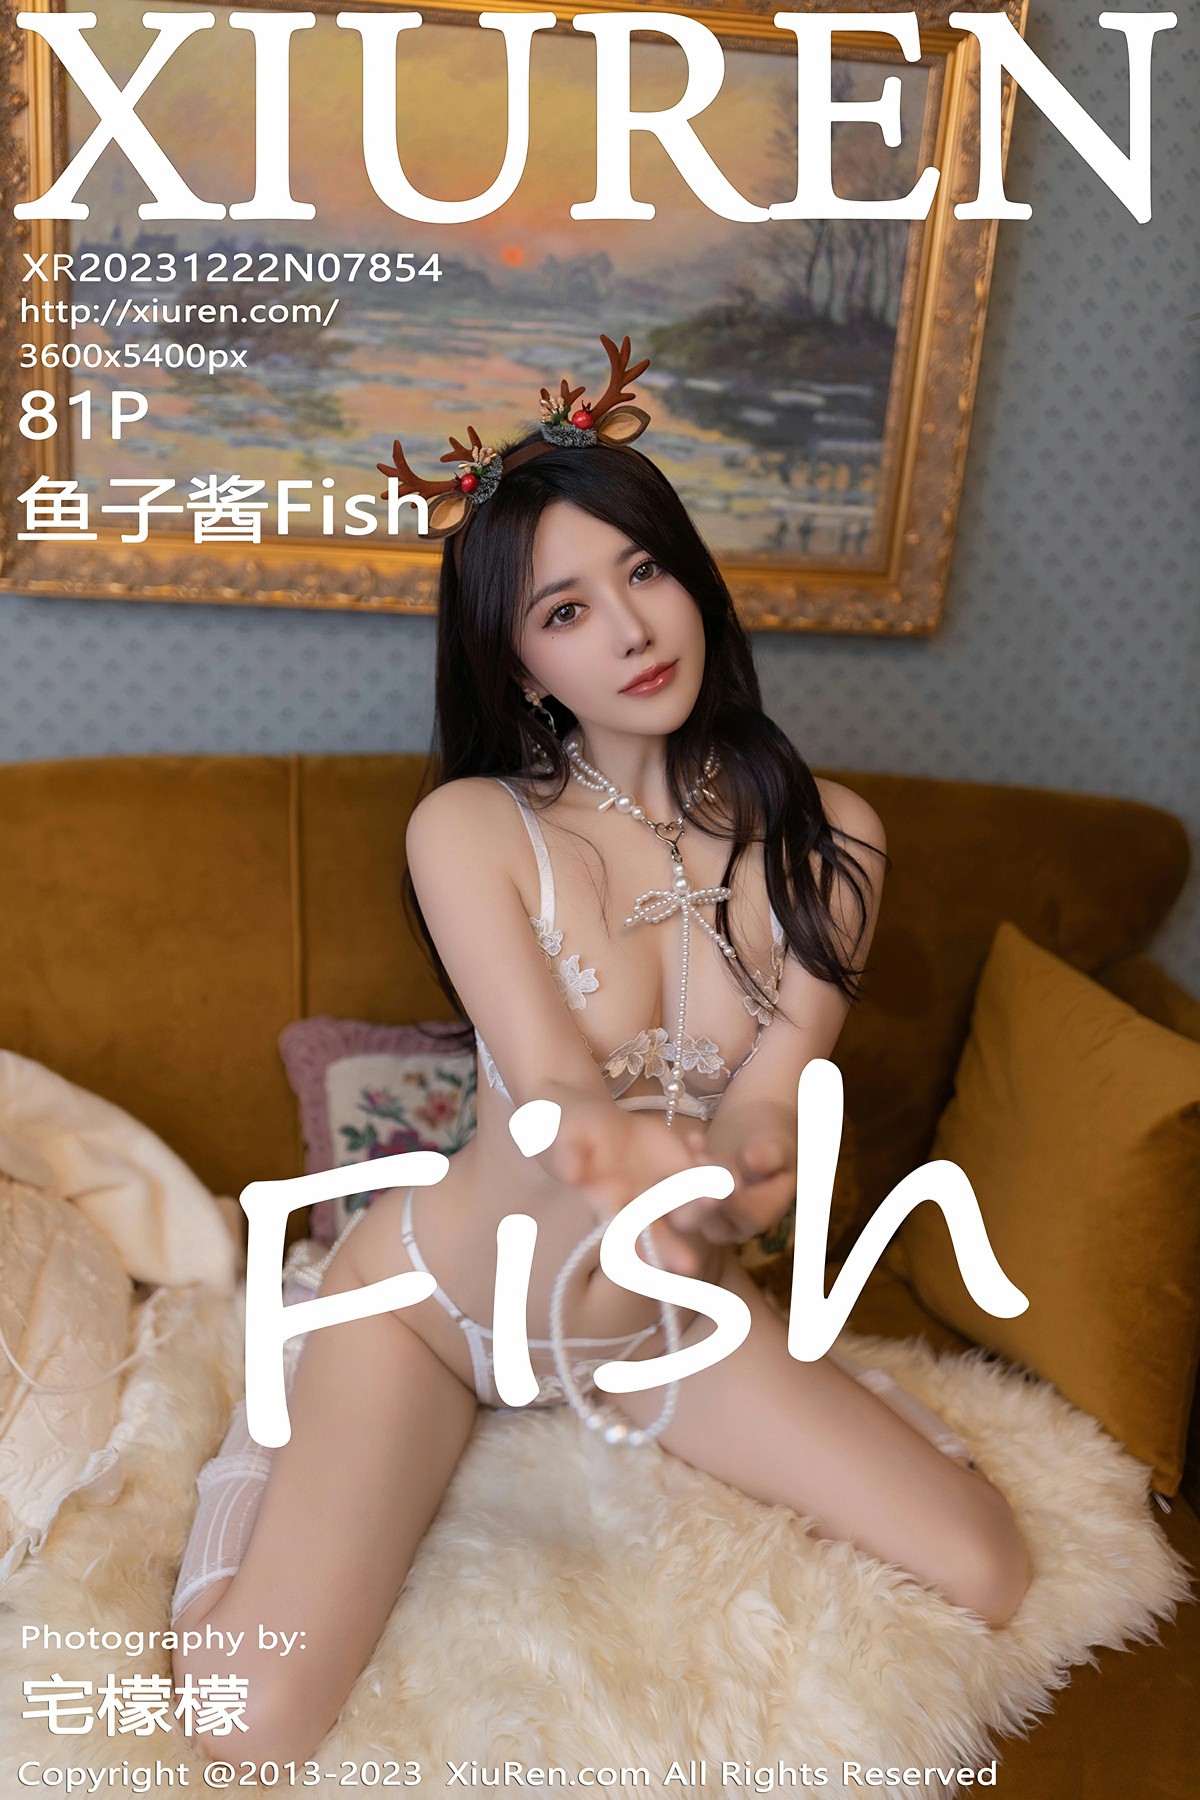 [XiuRen秀人网] 2023.12.22 No.7854 鱼子酱Fish [81+1P]